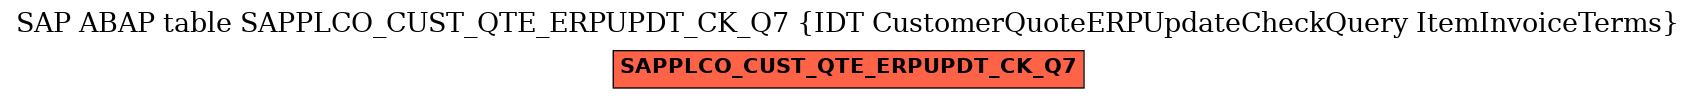 E-R Diagram for table SAPPLCO_CUST_QTE_ERPUPDT_CK_Q7 (IDT CustomerQuoteERPUpdateCheckQuery ItemInvoiceTerms)